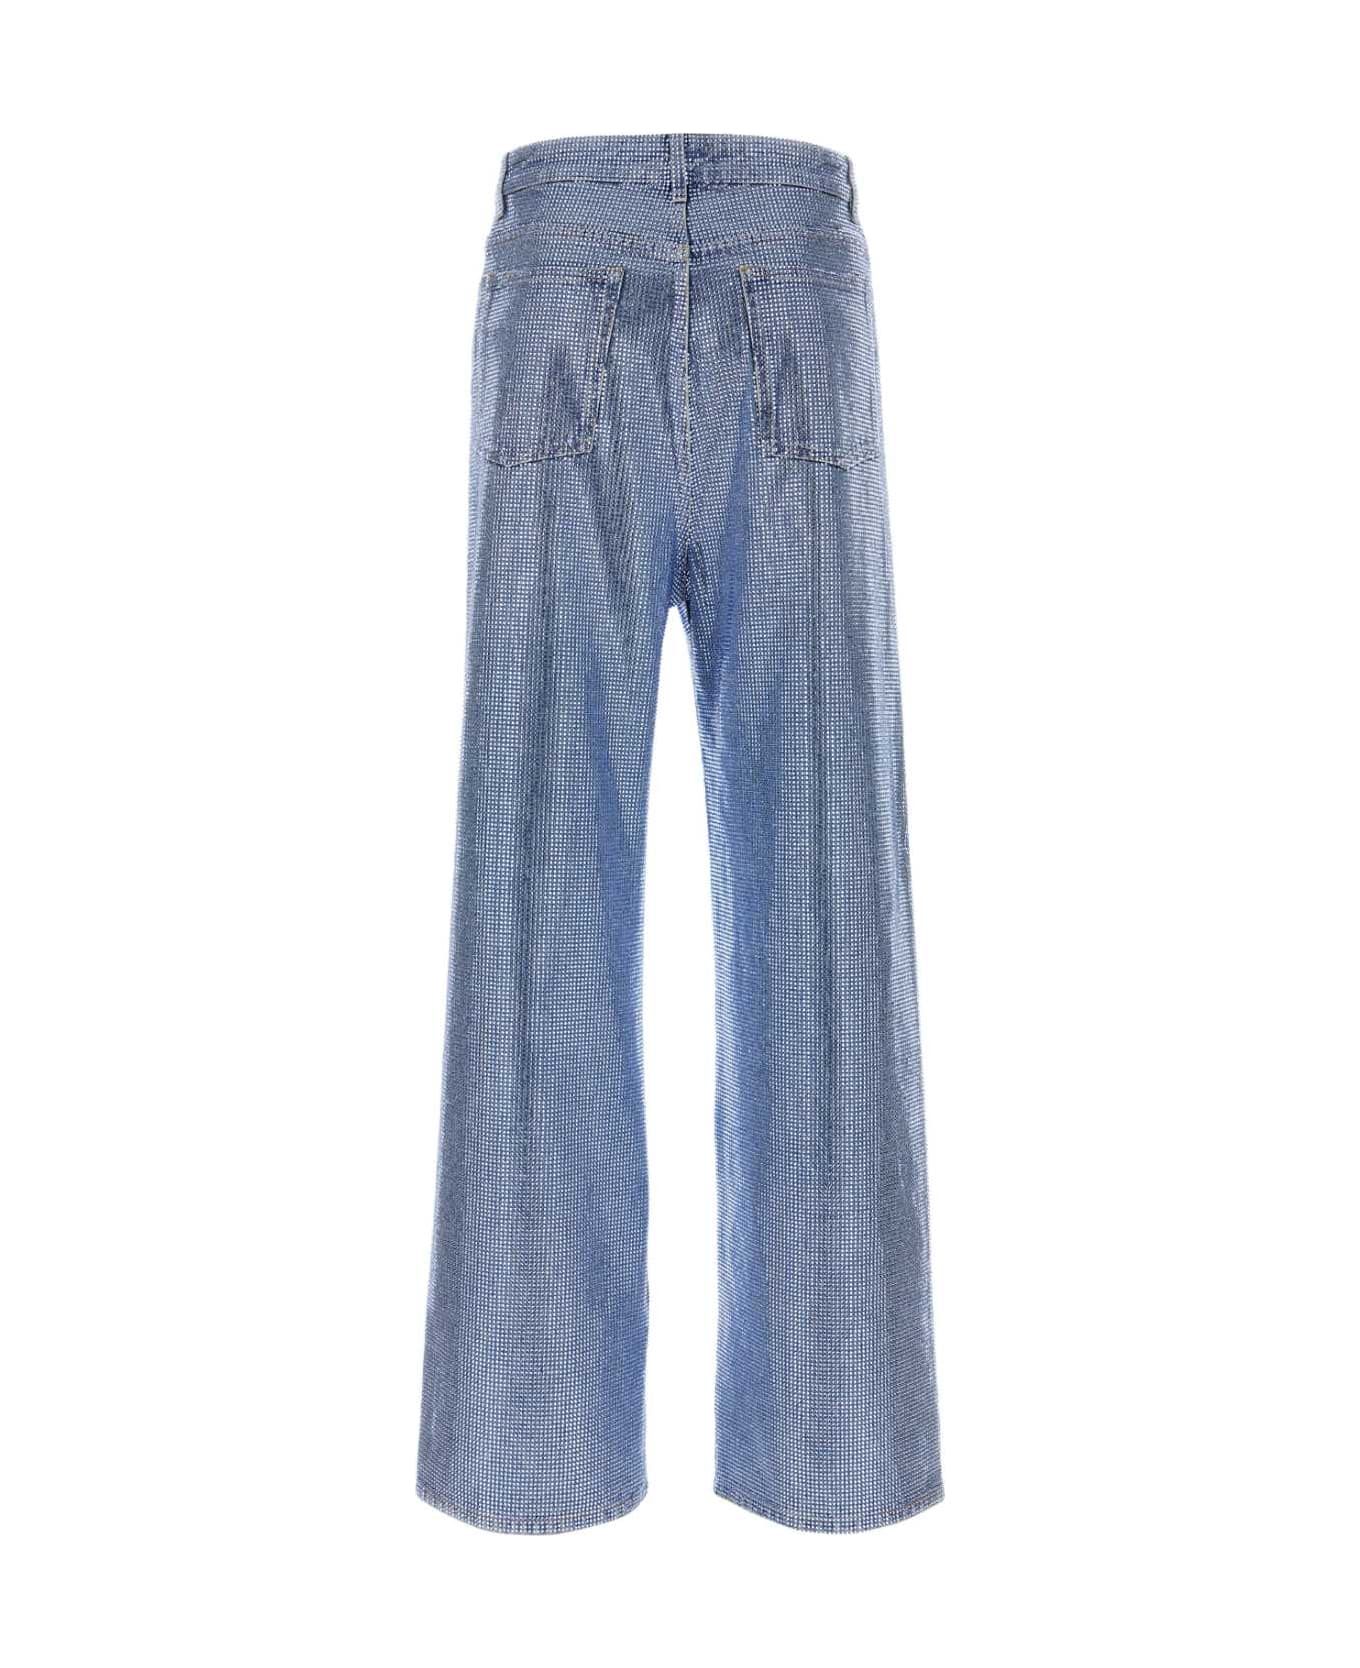 Loewe Embellished Denim Jeans - WASHEDDENIM デニム